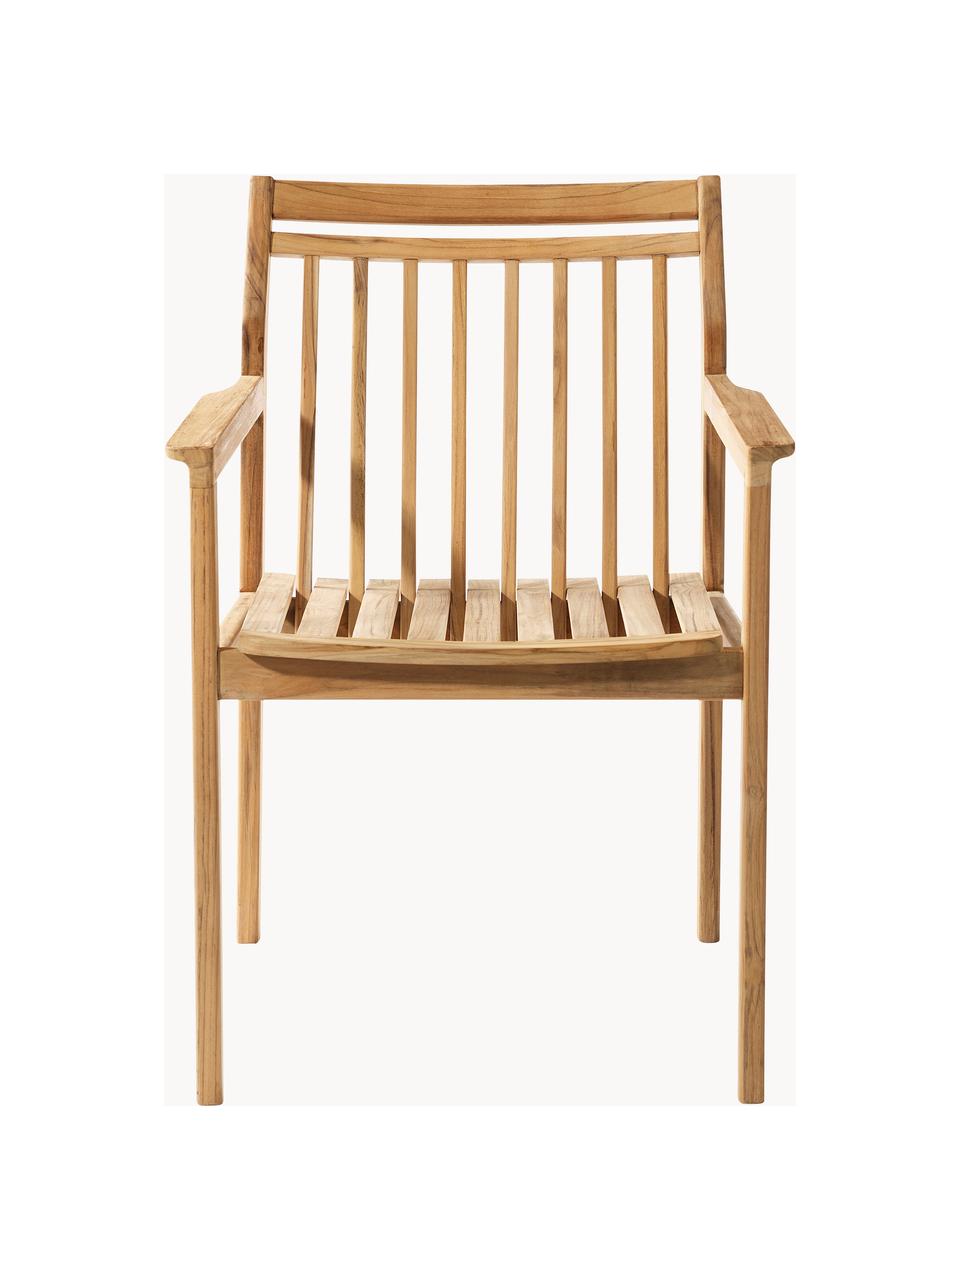 Zahradní židle z teakového dřeva Sammen, Teakové dřevo

Tento produkt je vyroben z udržitelných zdrojů dřeva s certifikací FSC®., Teakové dřevo, Š 63 cm, H 60 cm